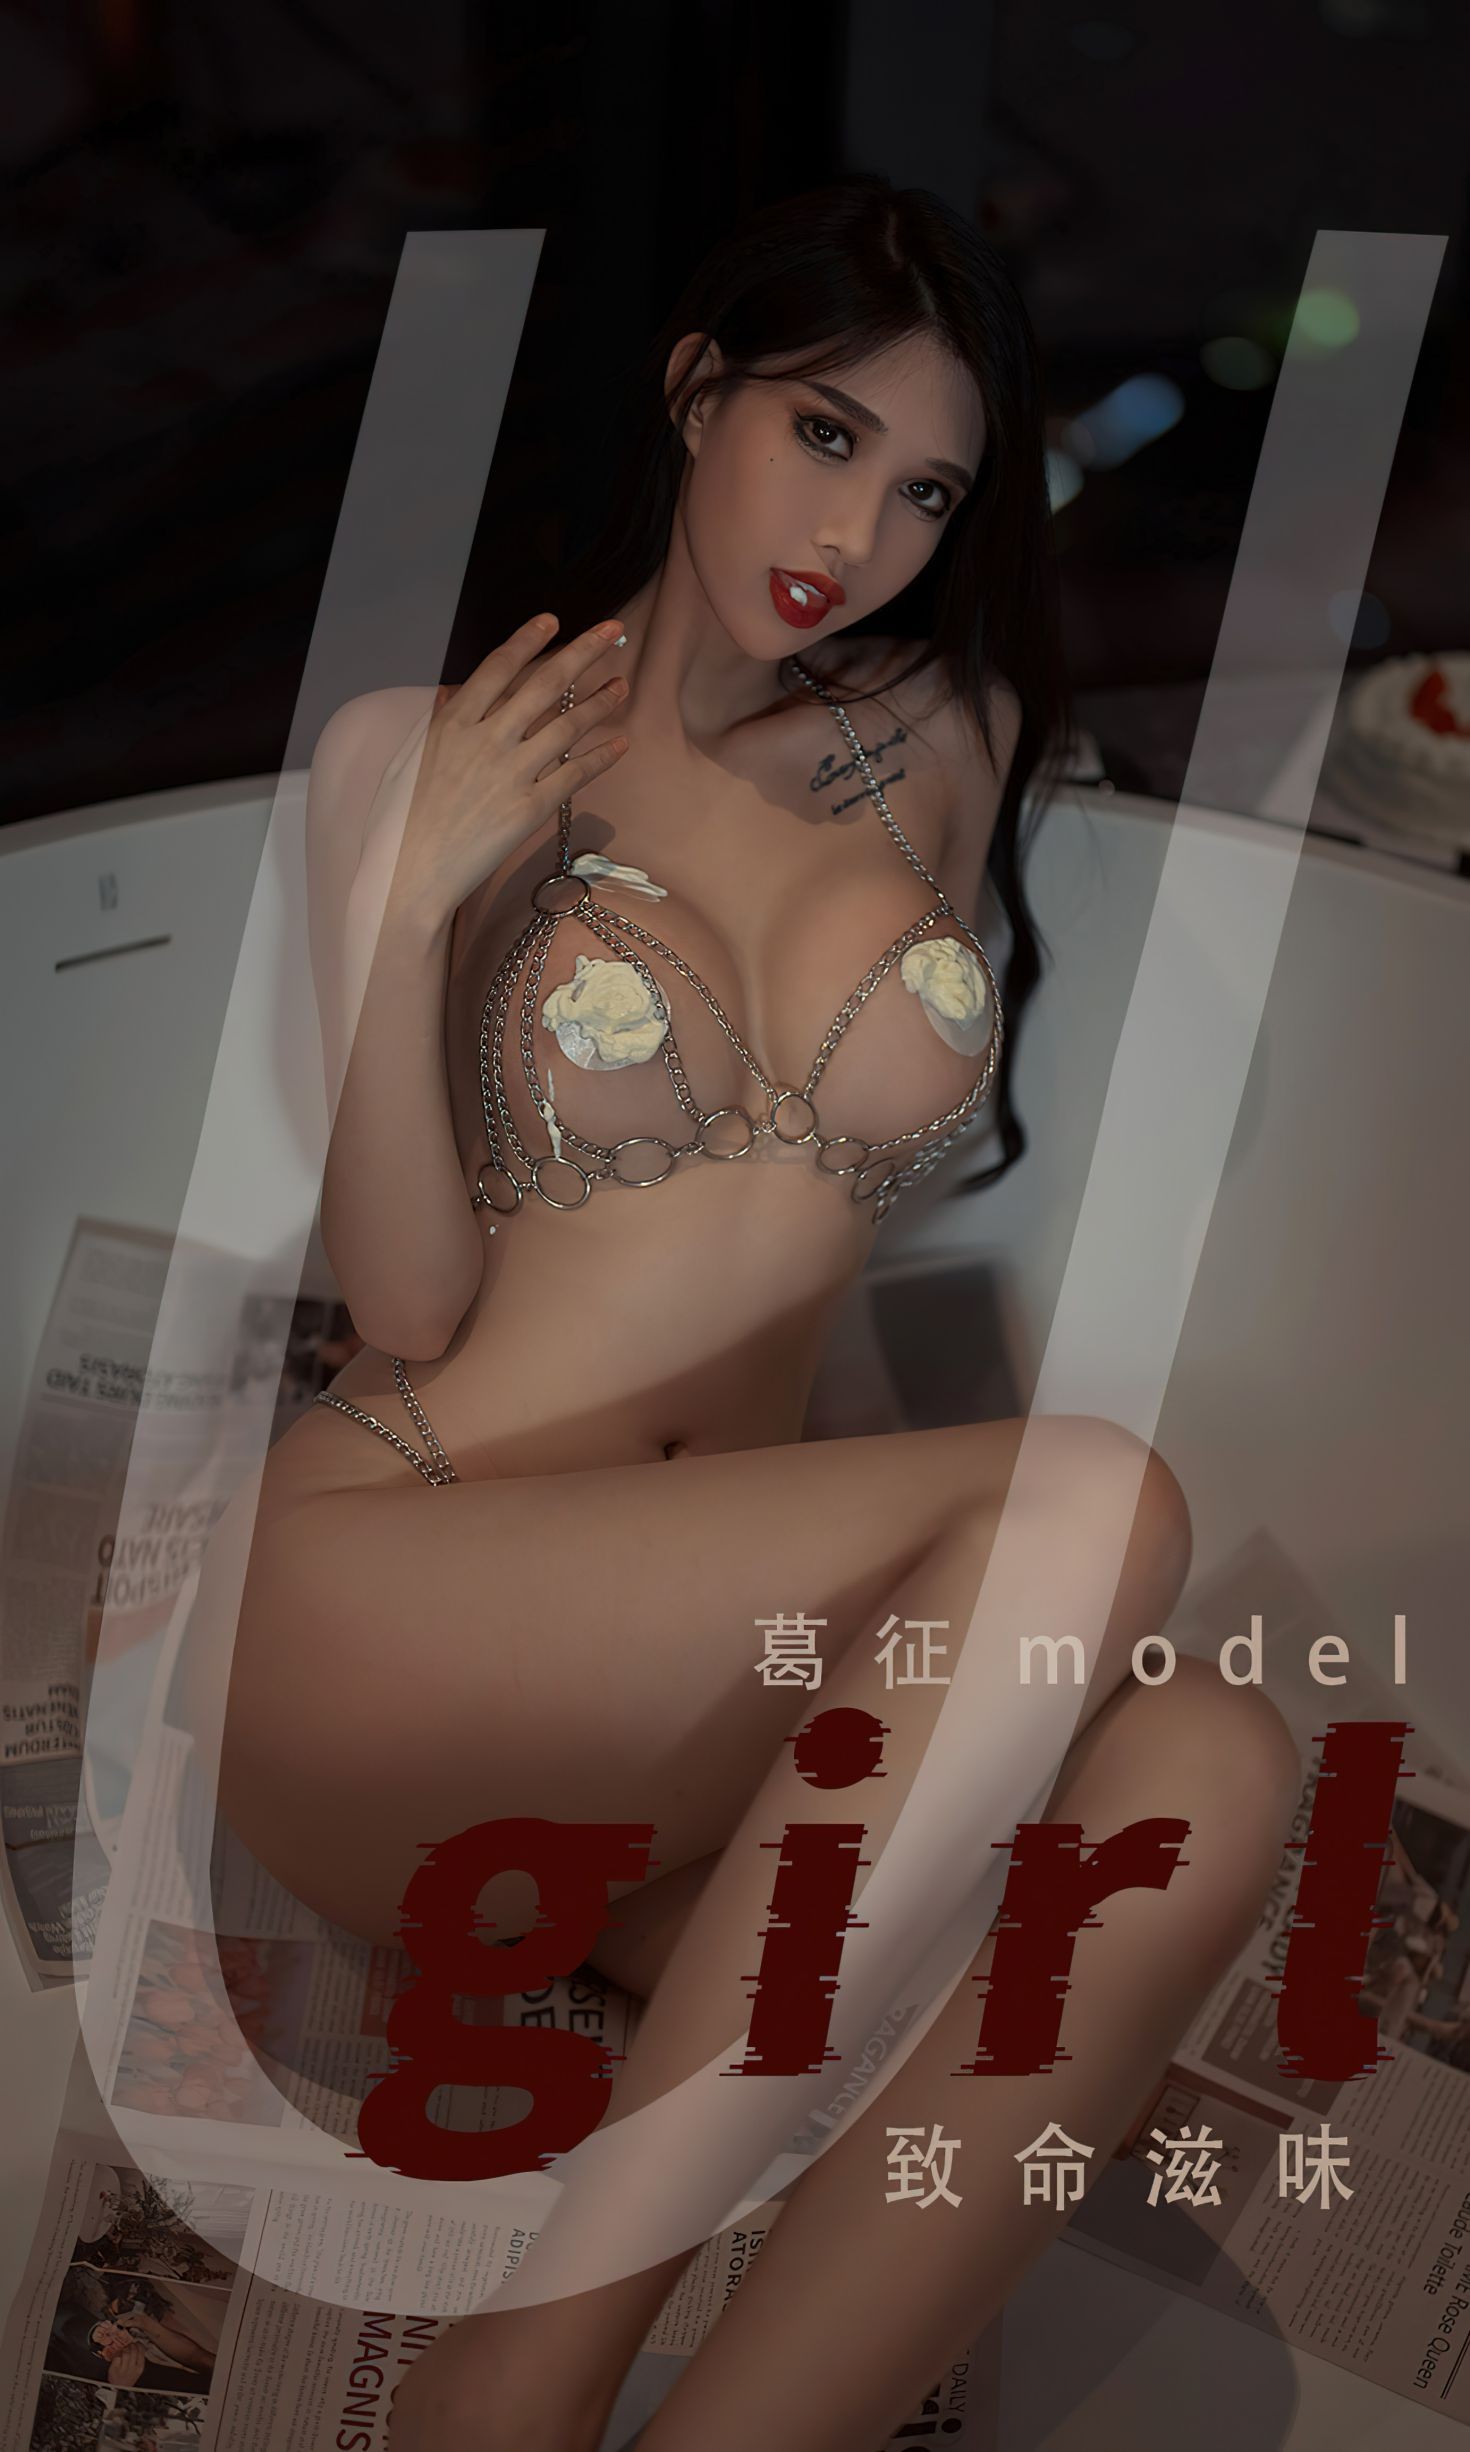 Ugirls爱尤物尤果圈美女模特写真第No.2382期致命滋味 葛征Model (2)